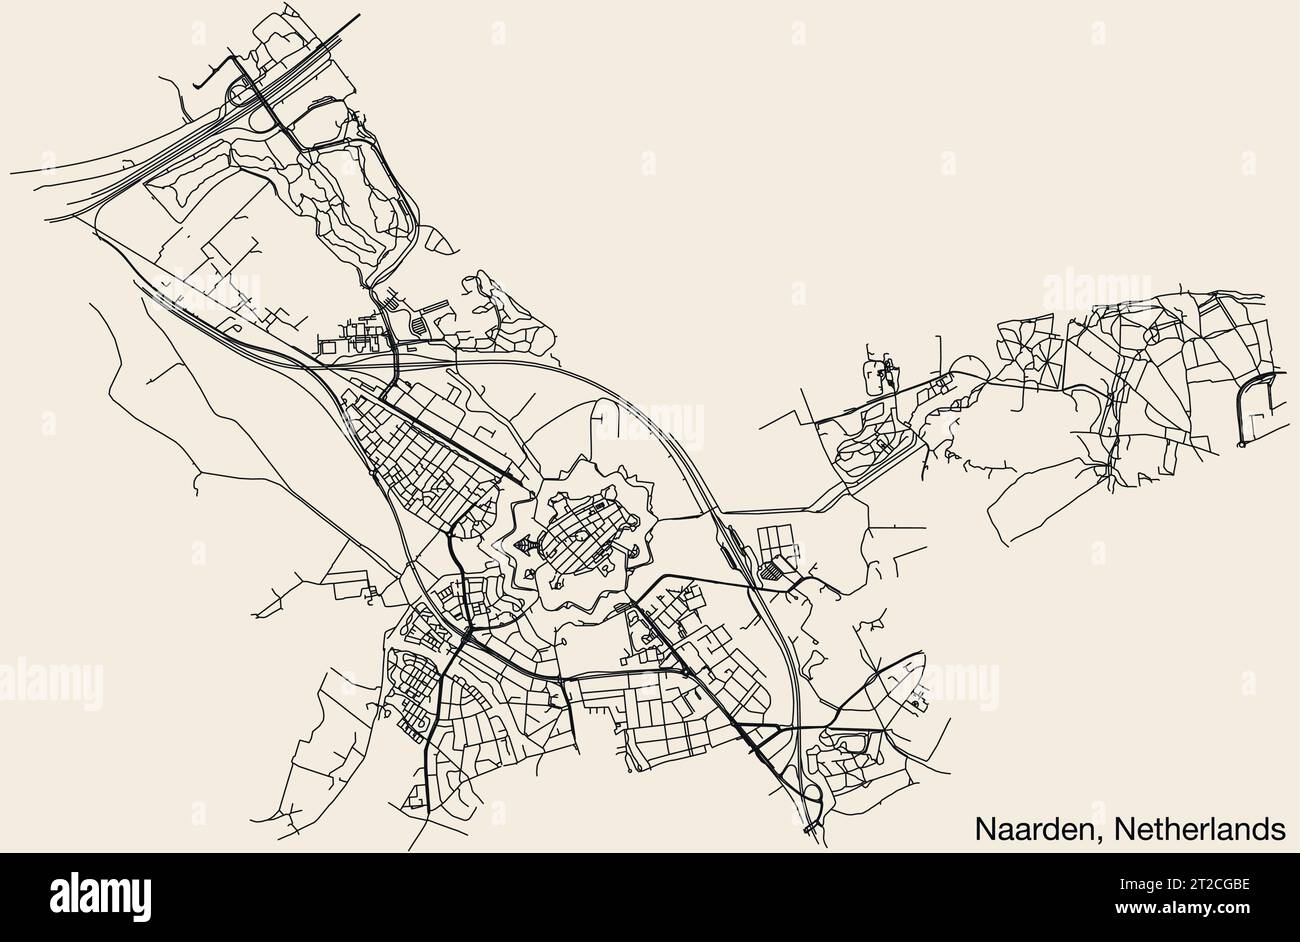 Street roads map of NAARDEN, NETHERLANDS Stock Vector